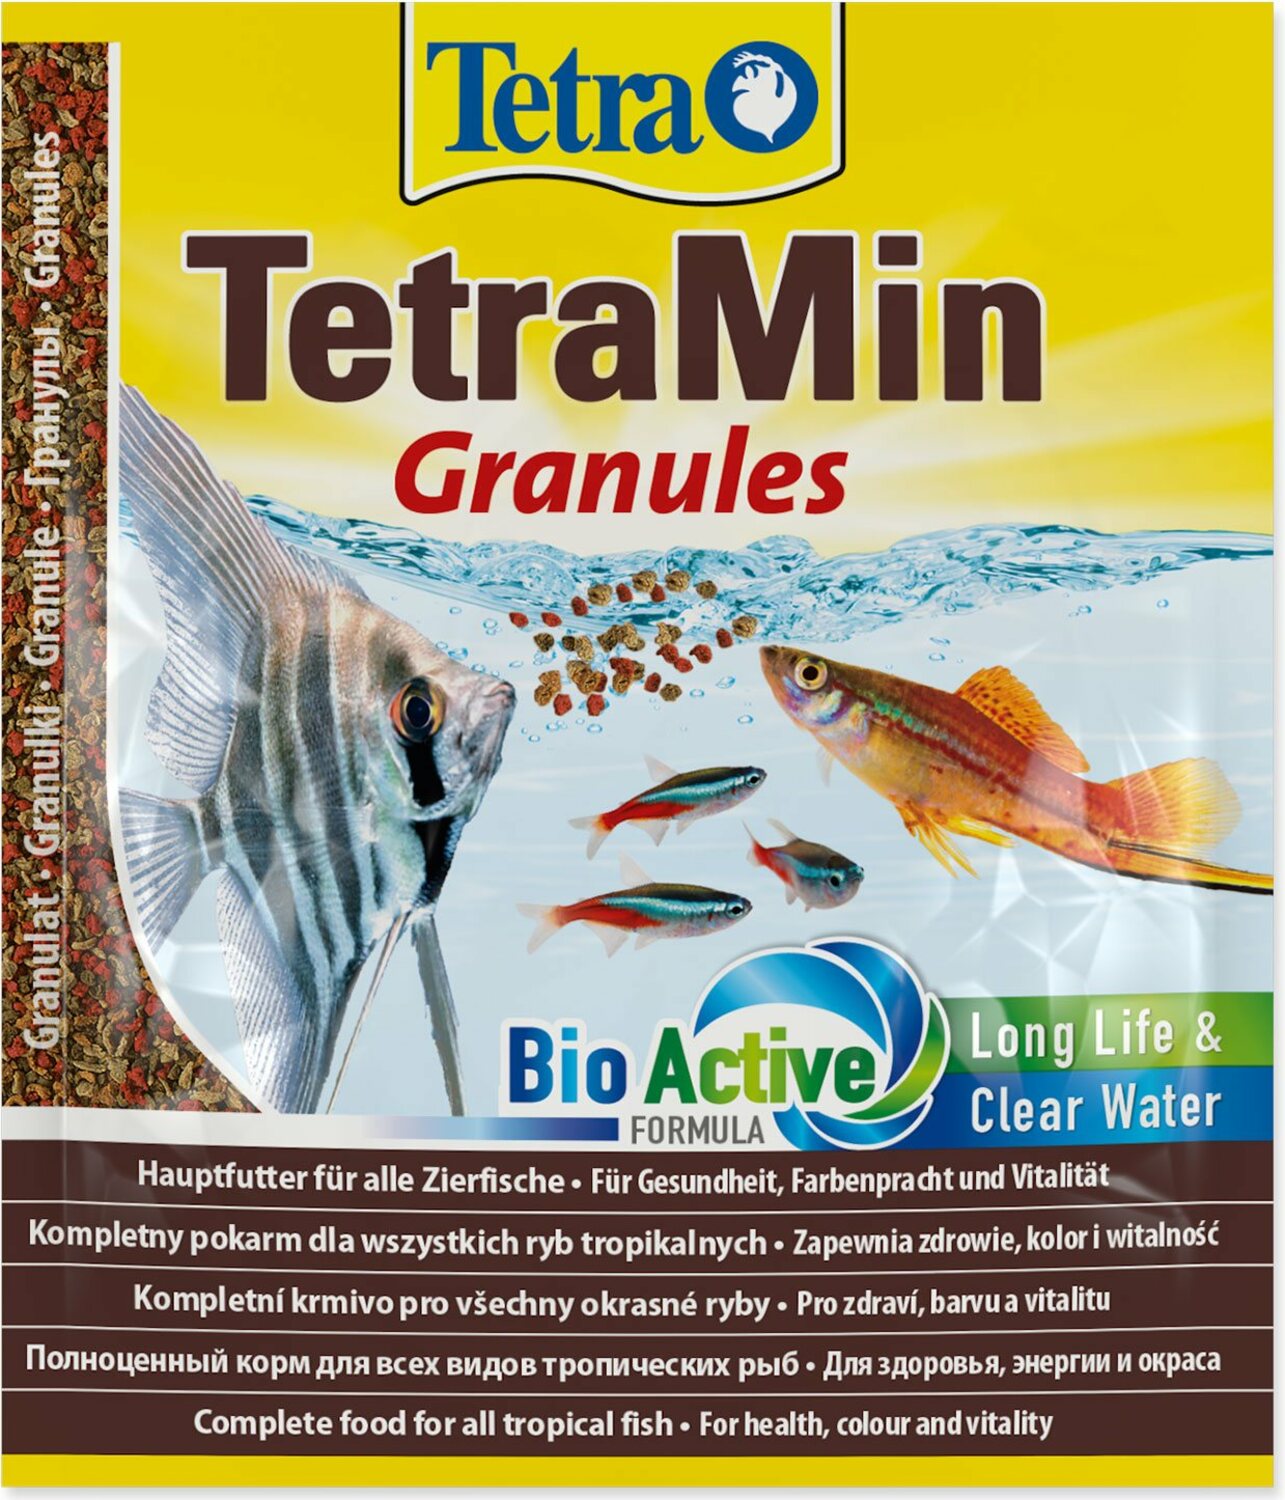 Krmivo Tetra Min Granules sáček 15g